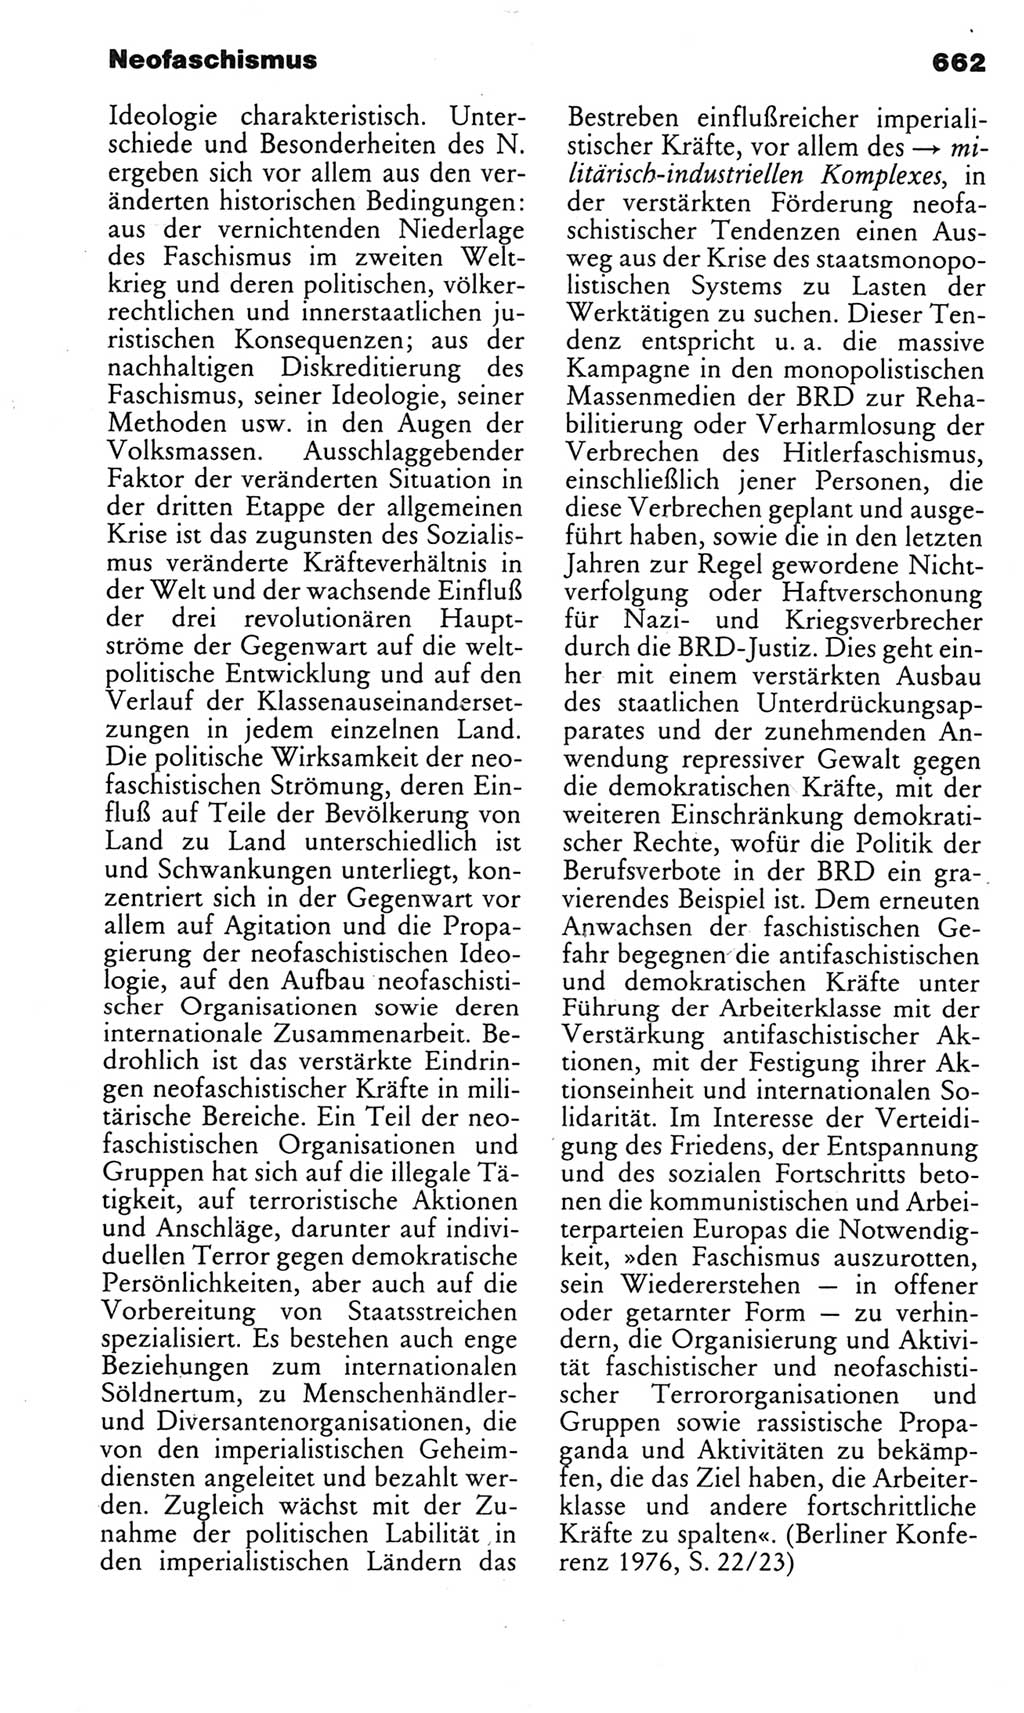 Kleines politisches Wörterbuch [Deutsche Demokratische Republik (DDR)] 1983, Seite 662 (Kl. pol. Wb. DDR 1983, S. 662)